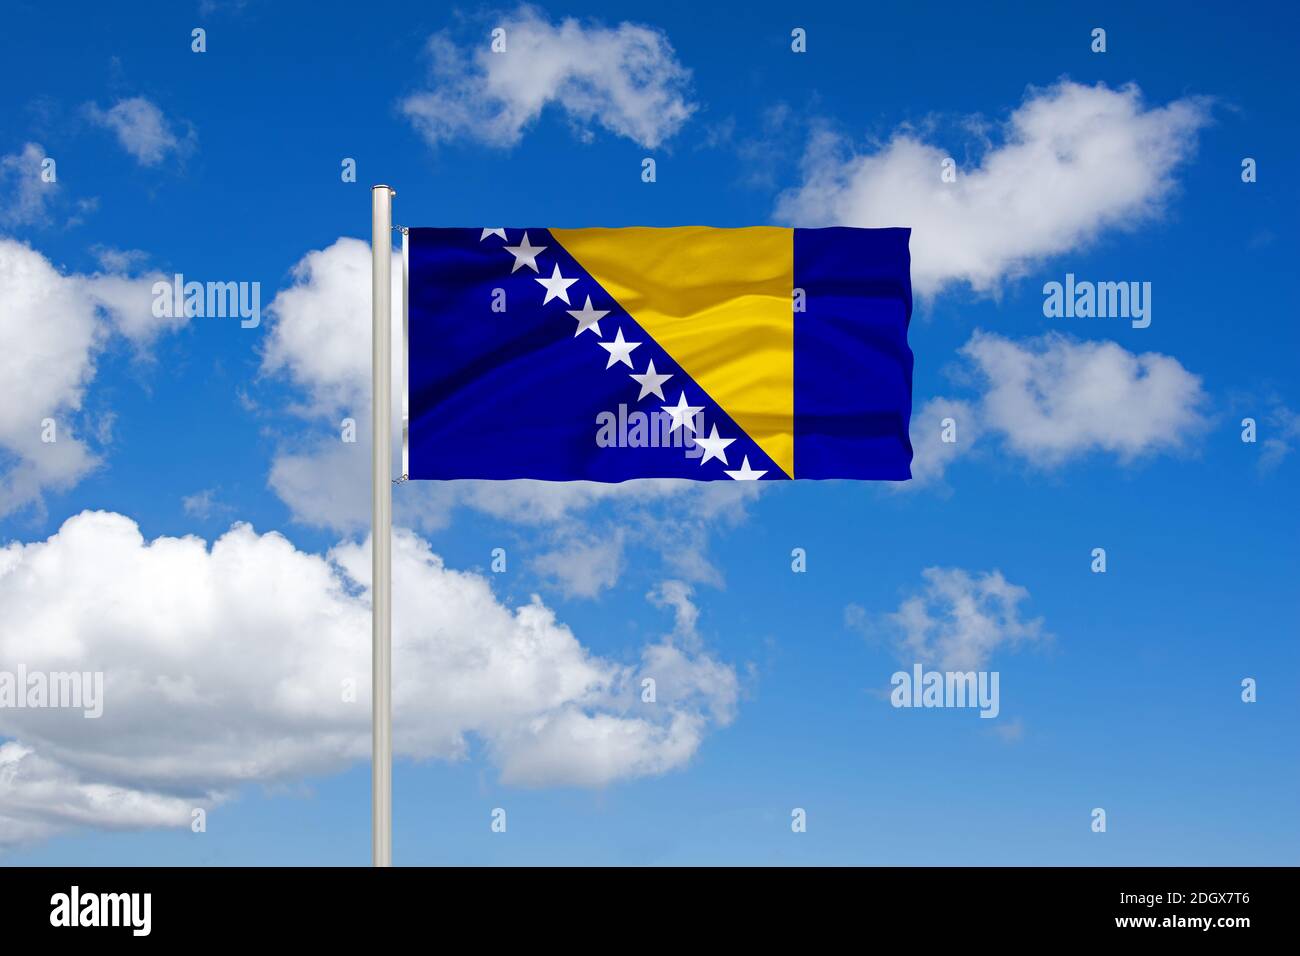 Südeuropa, Balkan, Bosnien und Herzegowina, Flagge, Nationalflagge, Fahne, Nationalfahne, Cumulus Wolken vor blauen Himmel, Stock Photo